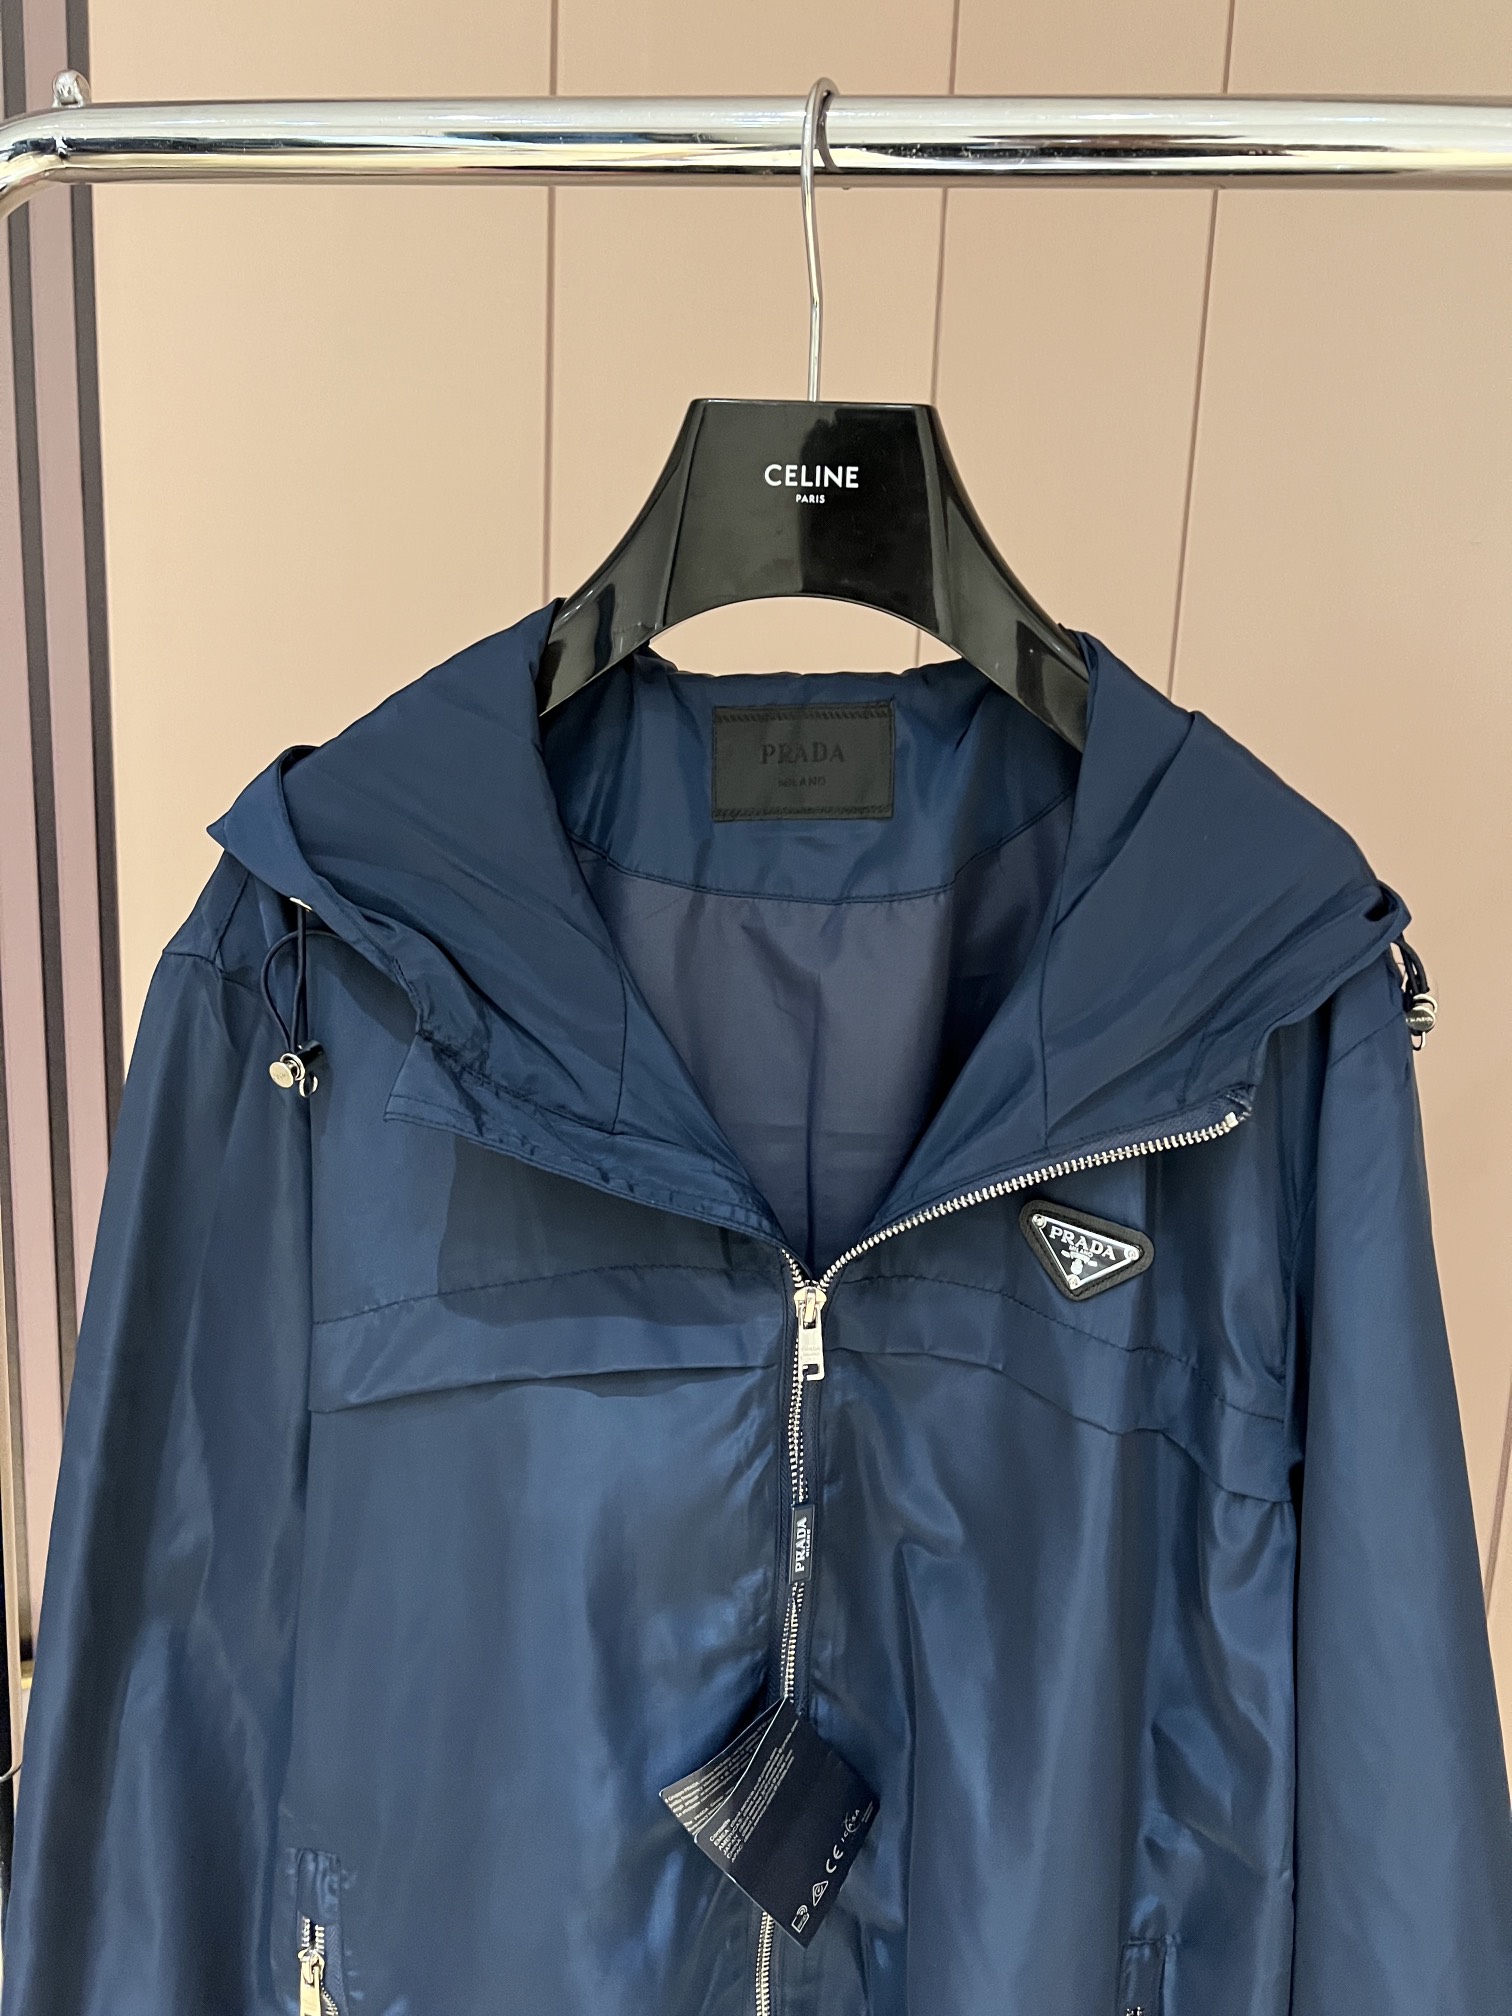 2022Prada 2022FW新款夹克外套🖤最新的再生尼龙环保系列外套